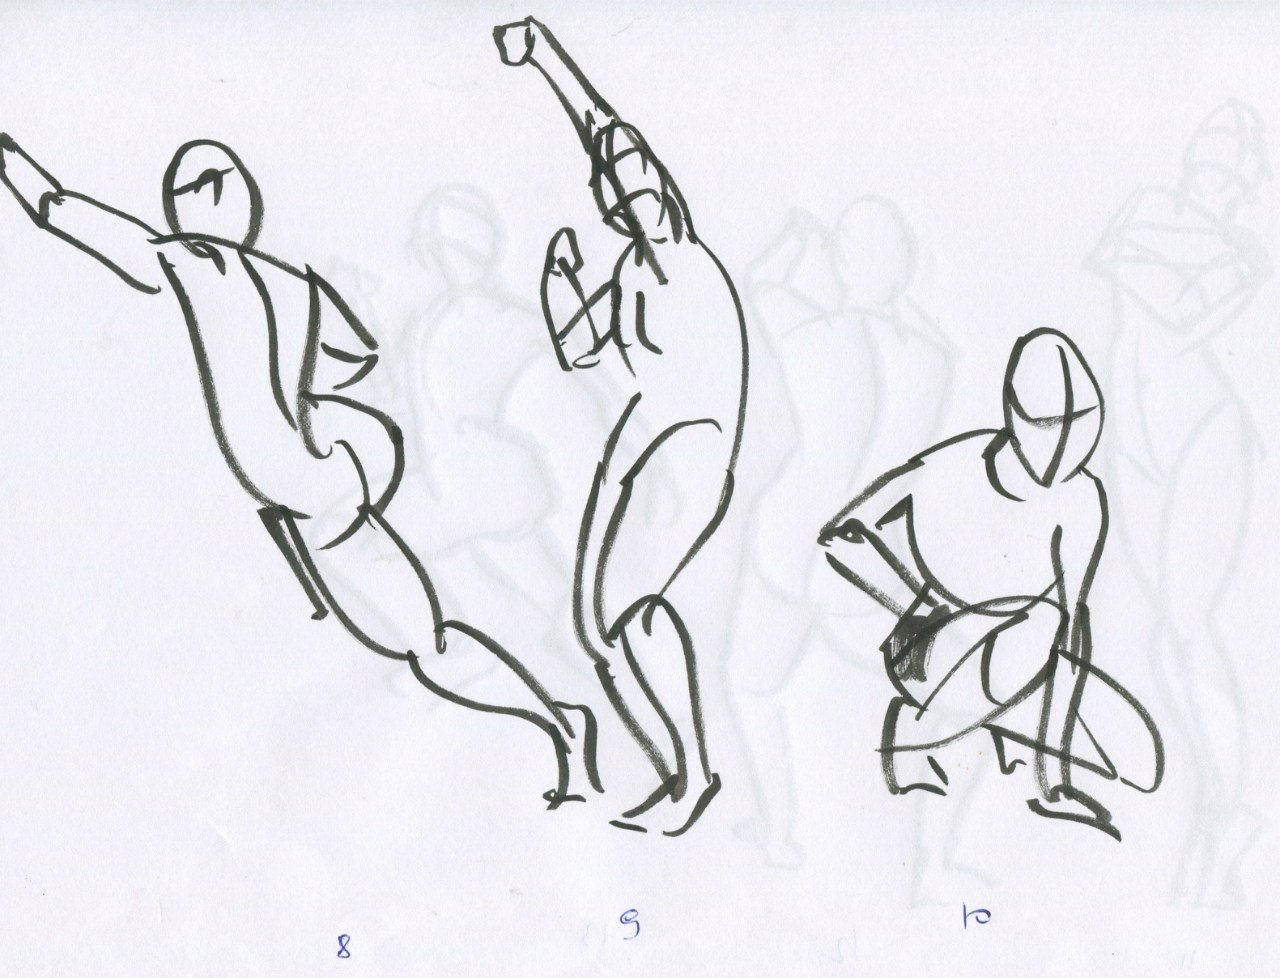 Изобразить человека в движении. Наброски человека в движении. Эскиз фигуры человека в движении. Набросок ф ГУРЫ человека в движении. Человек в движении рисунок.